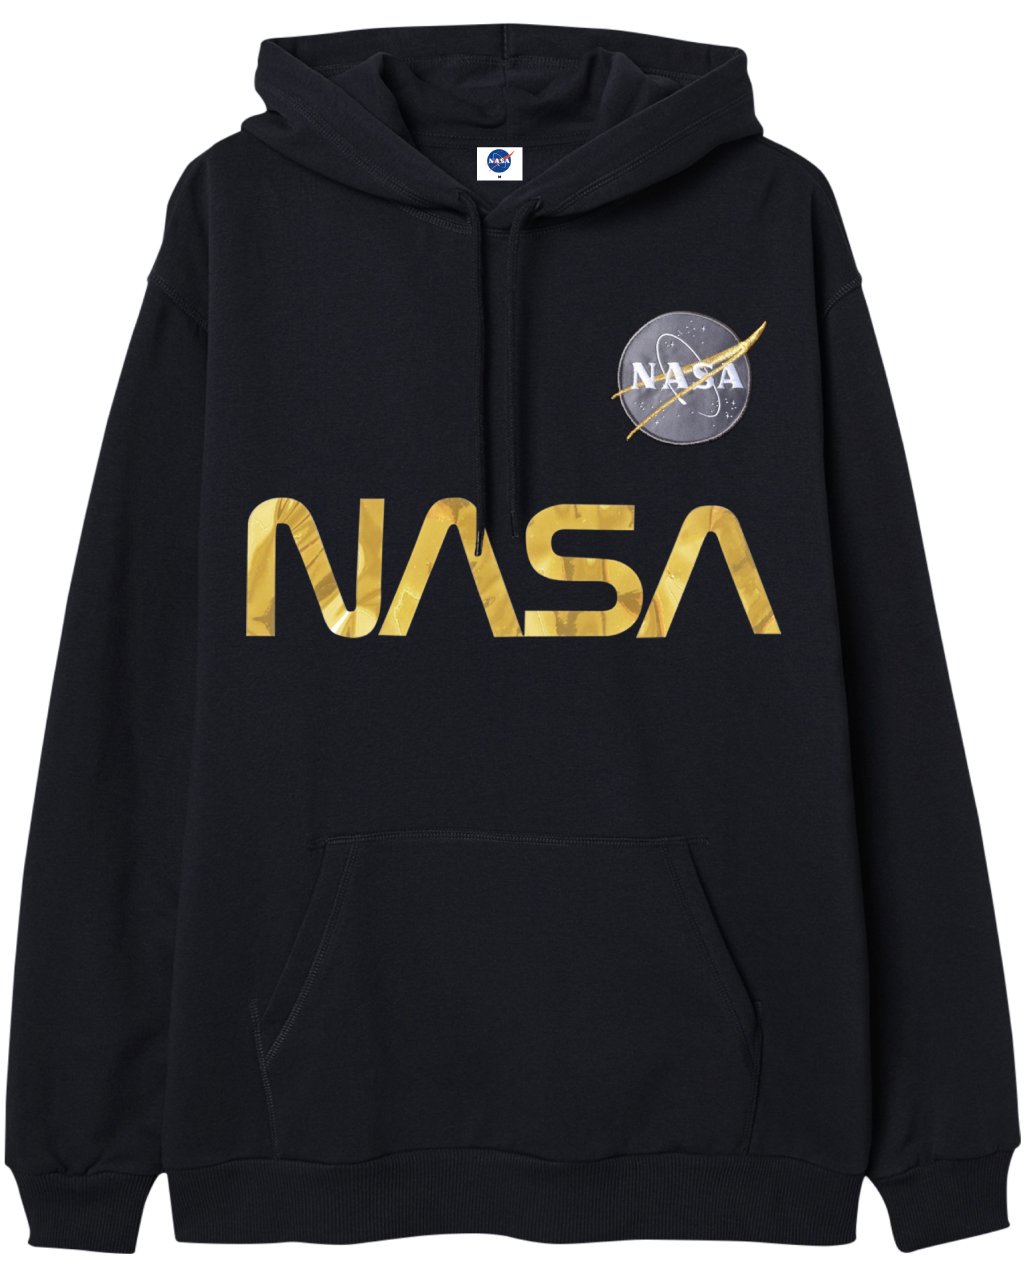 HOODIE NASA NEGRO GOLD